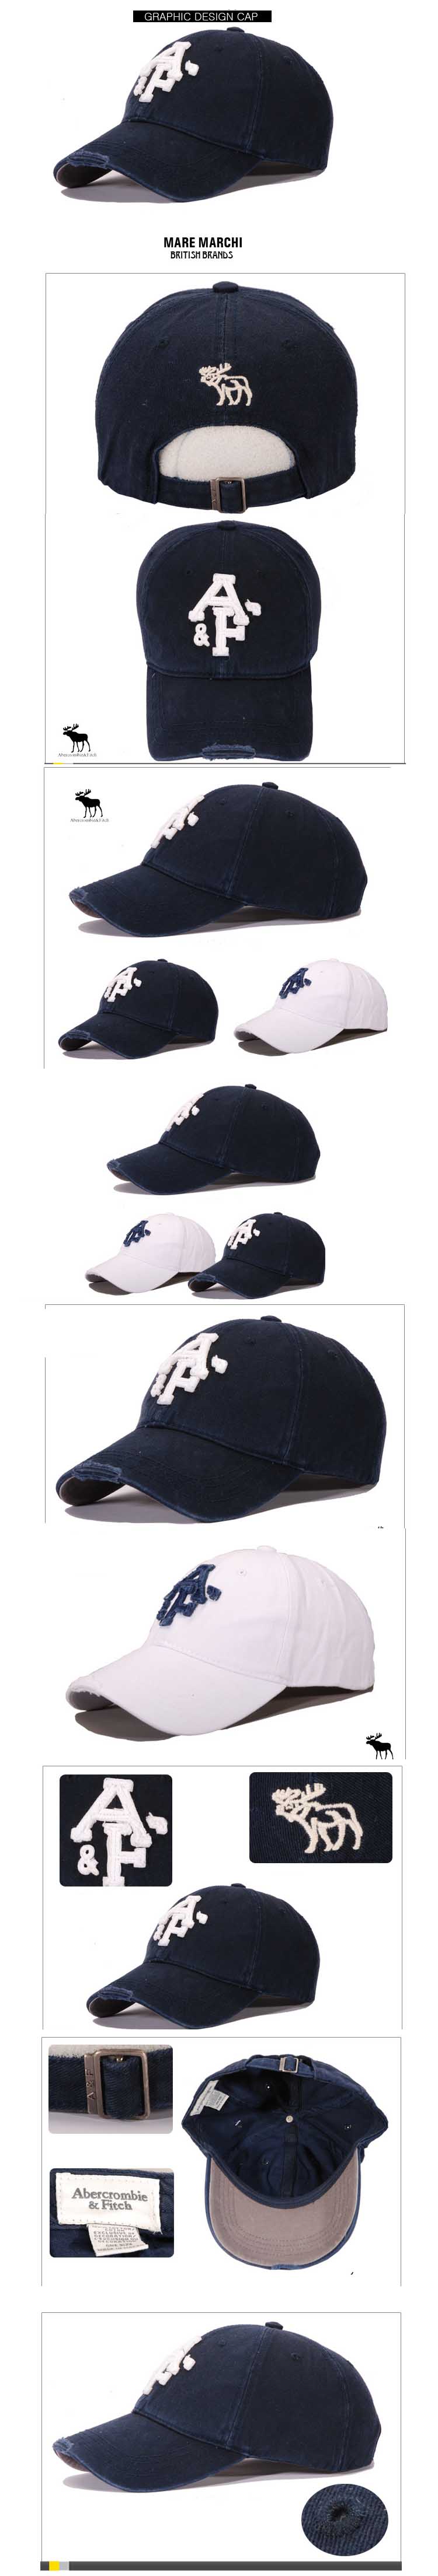 jual topi pria merk a&f branded dari bahan katun berkualitas import, cari topi pria online? topi terlengkap hanya ada di store.pakaianfashionpria.com